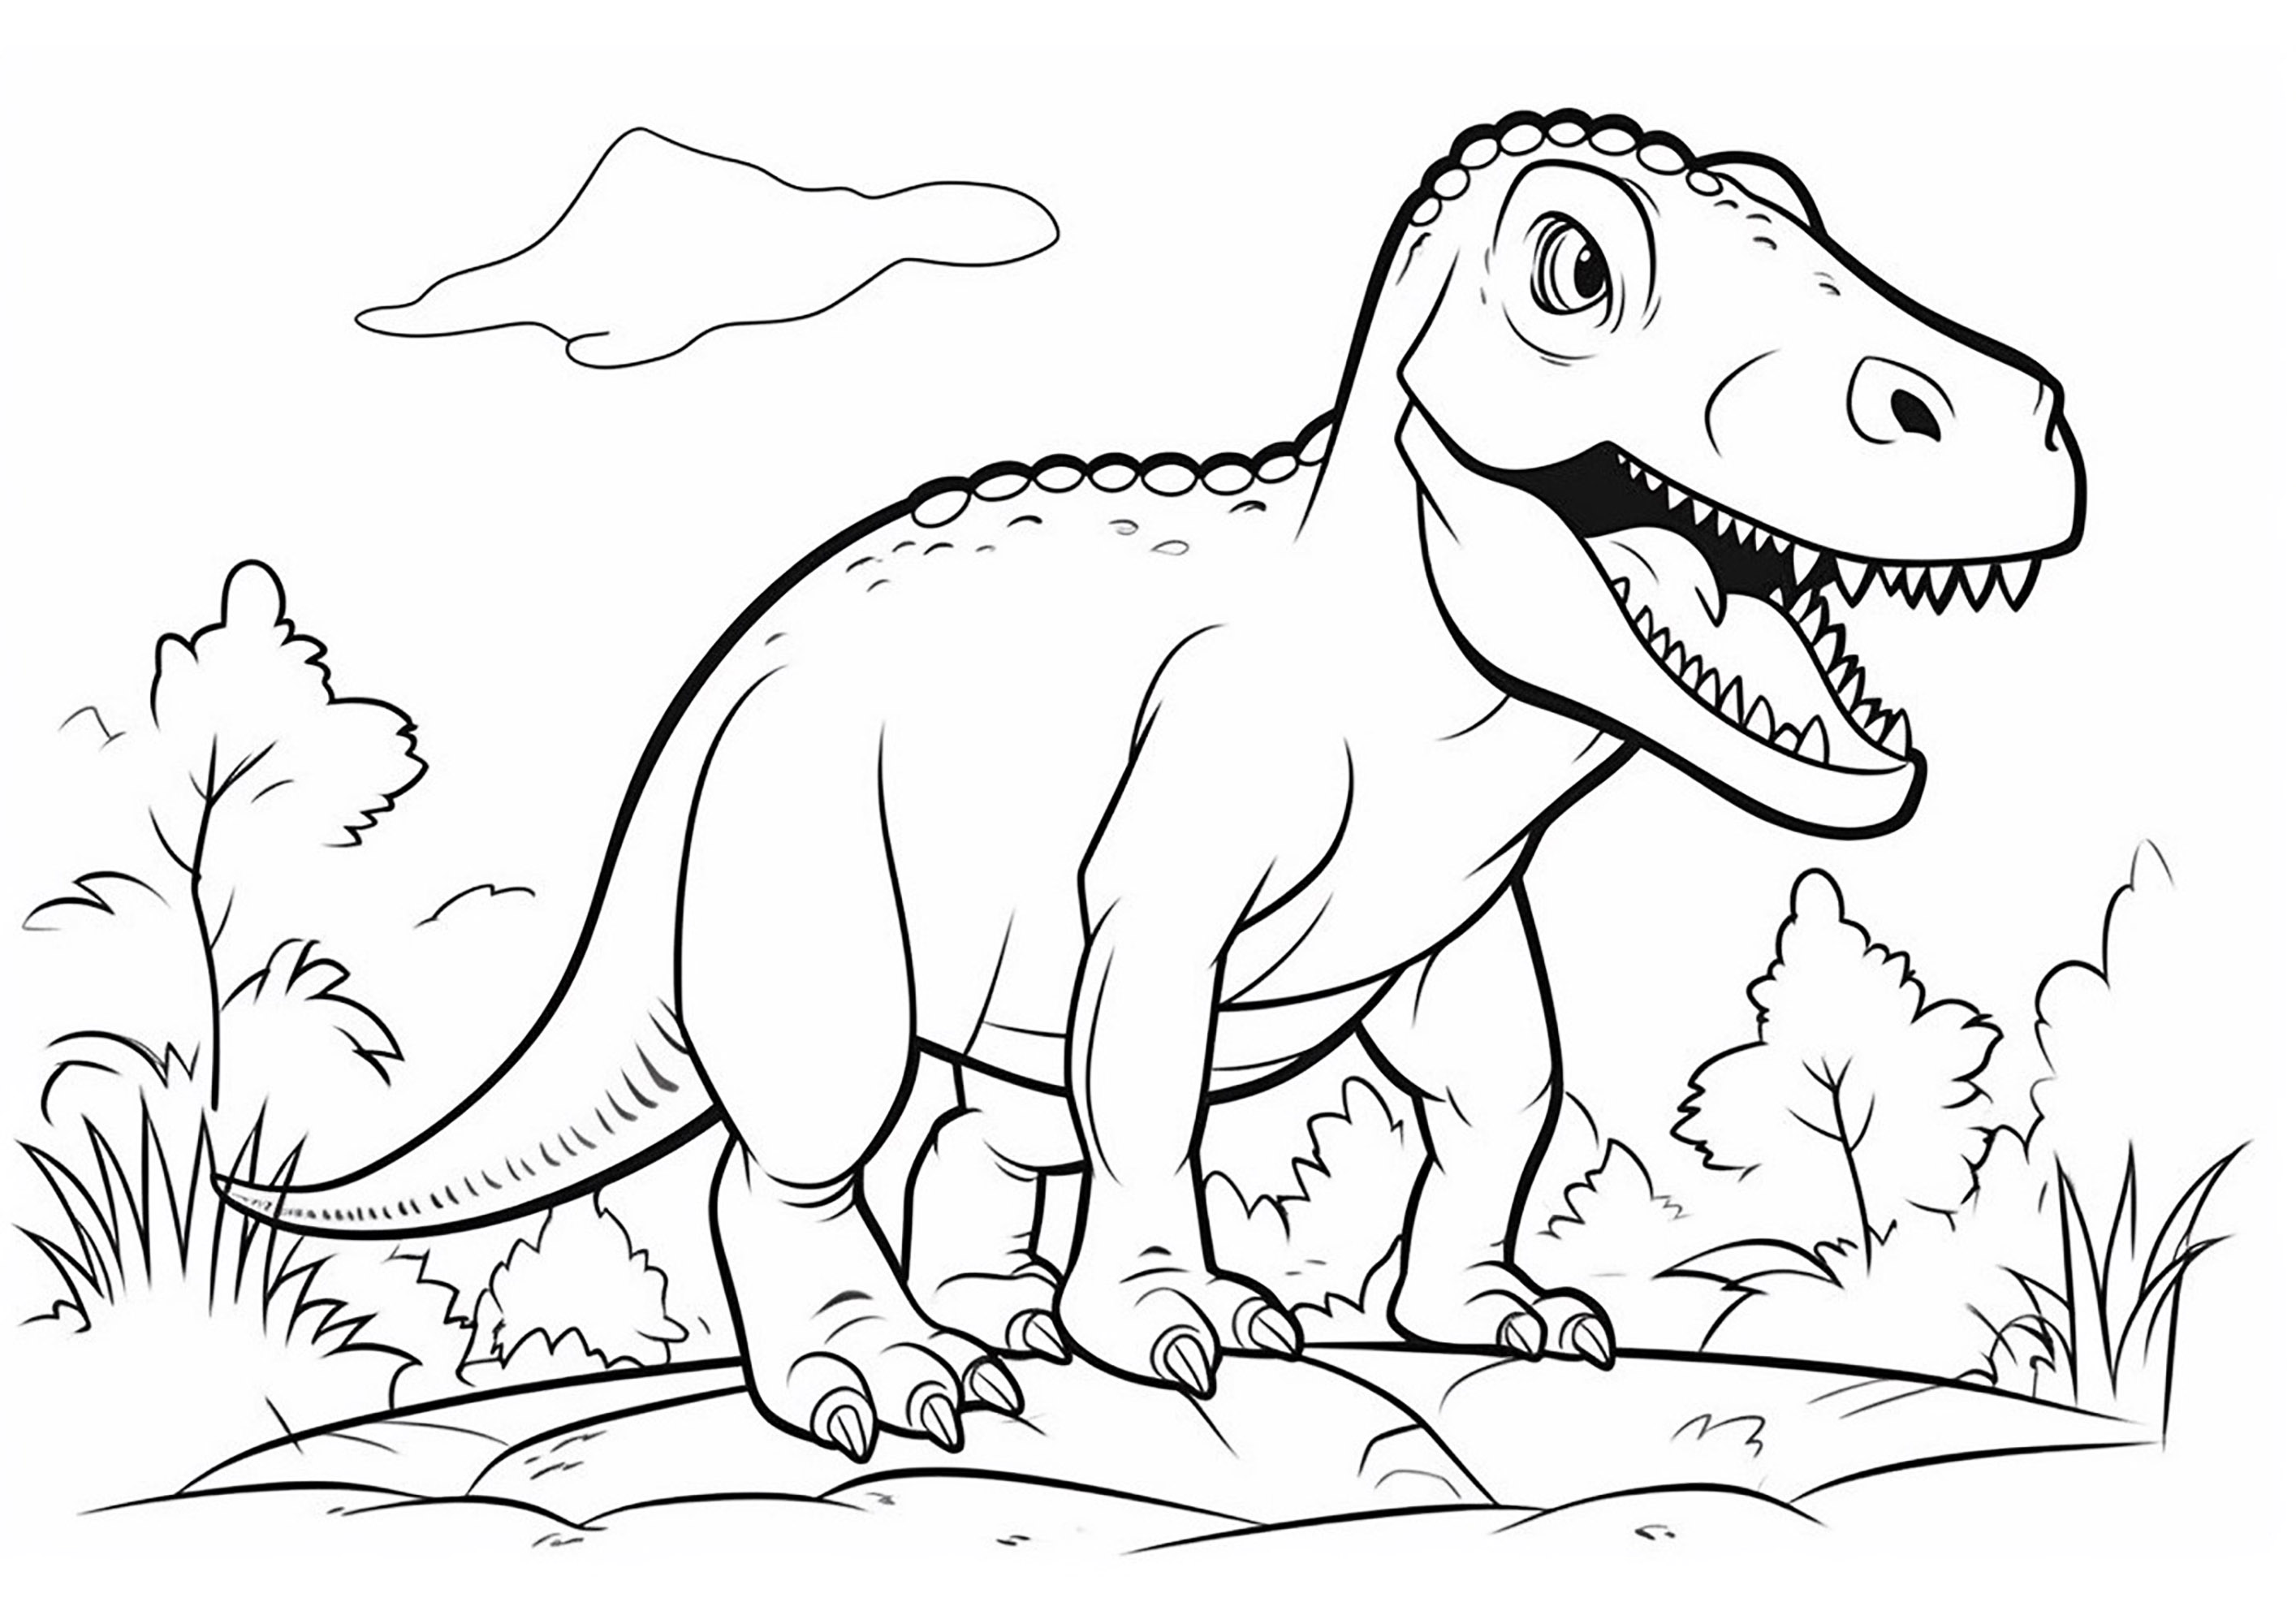 Tiranosaurio simple. Coloreado sencillo de un tiranosaurio